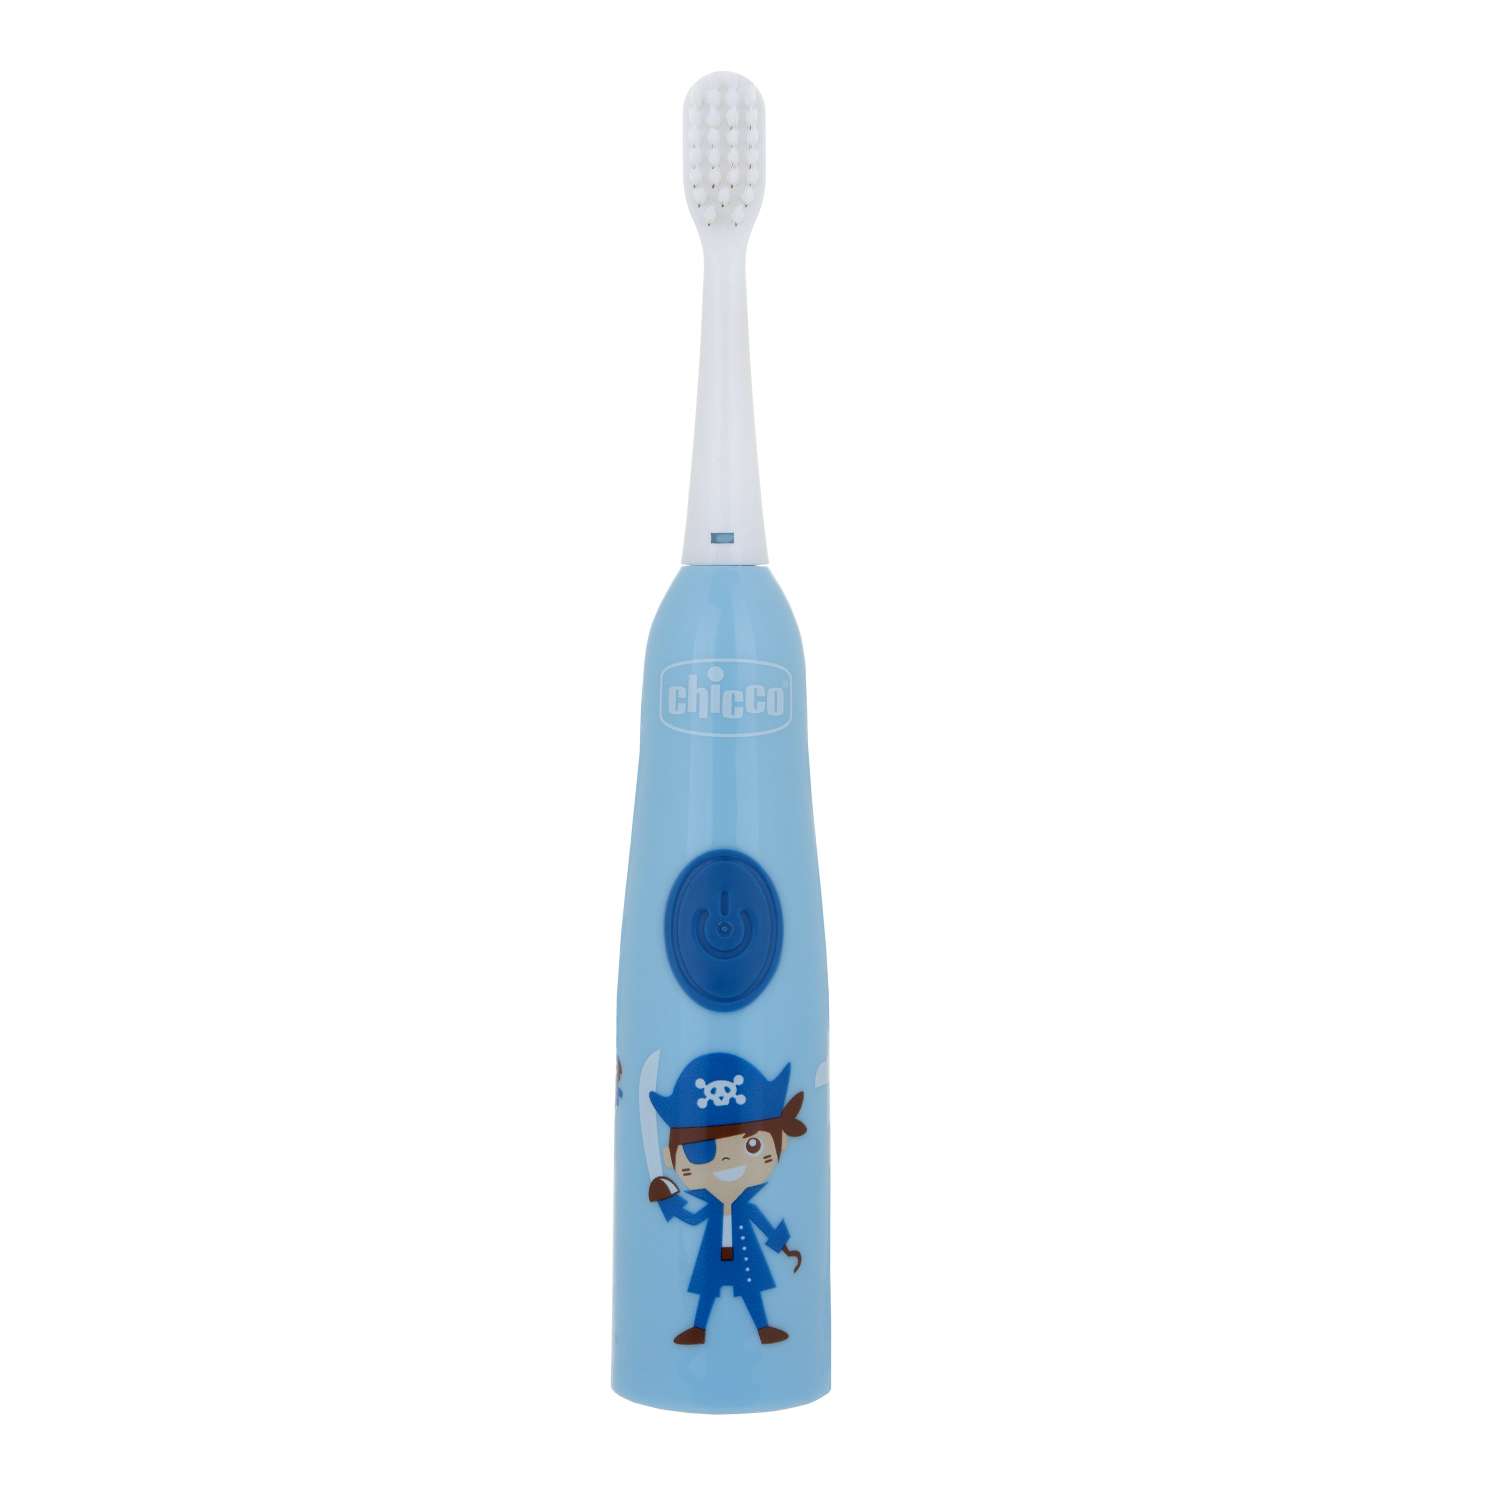 Электрическая зубная щетка Chicco для мальчика мягкие щетинки для детей от 3 лет сменная насадка в комплекте - фото 1